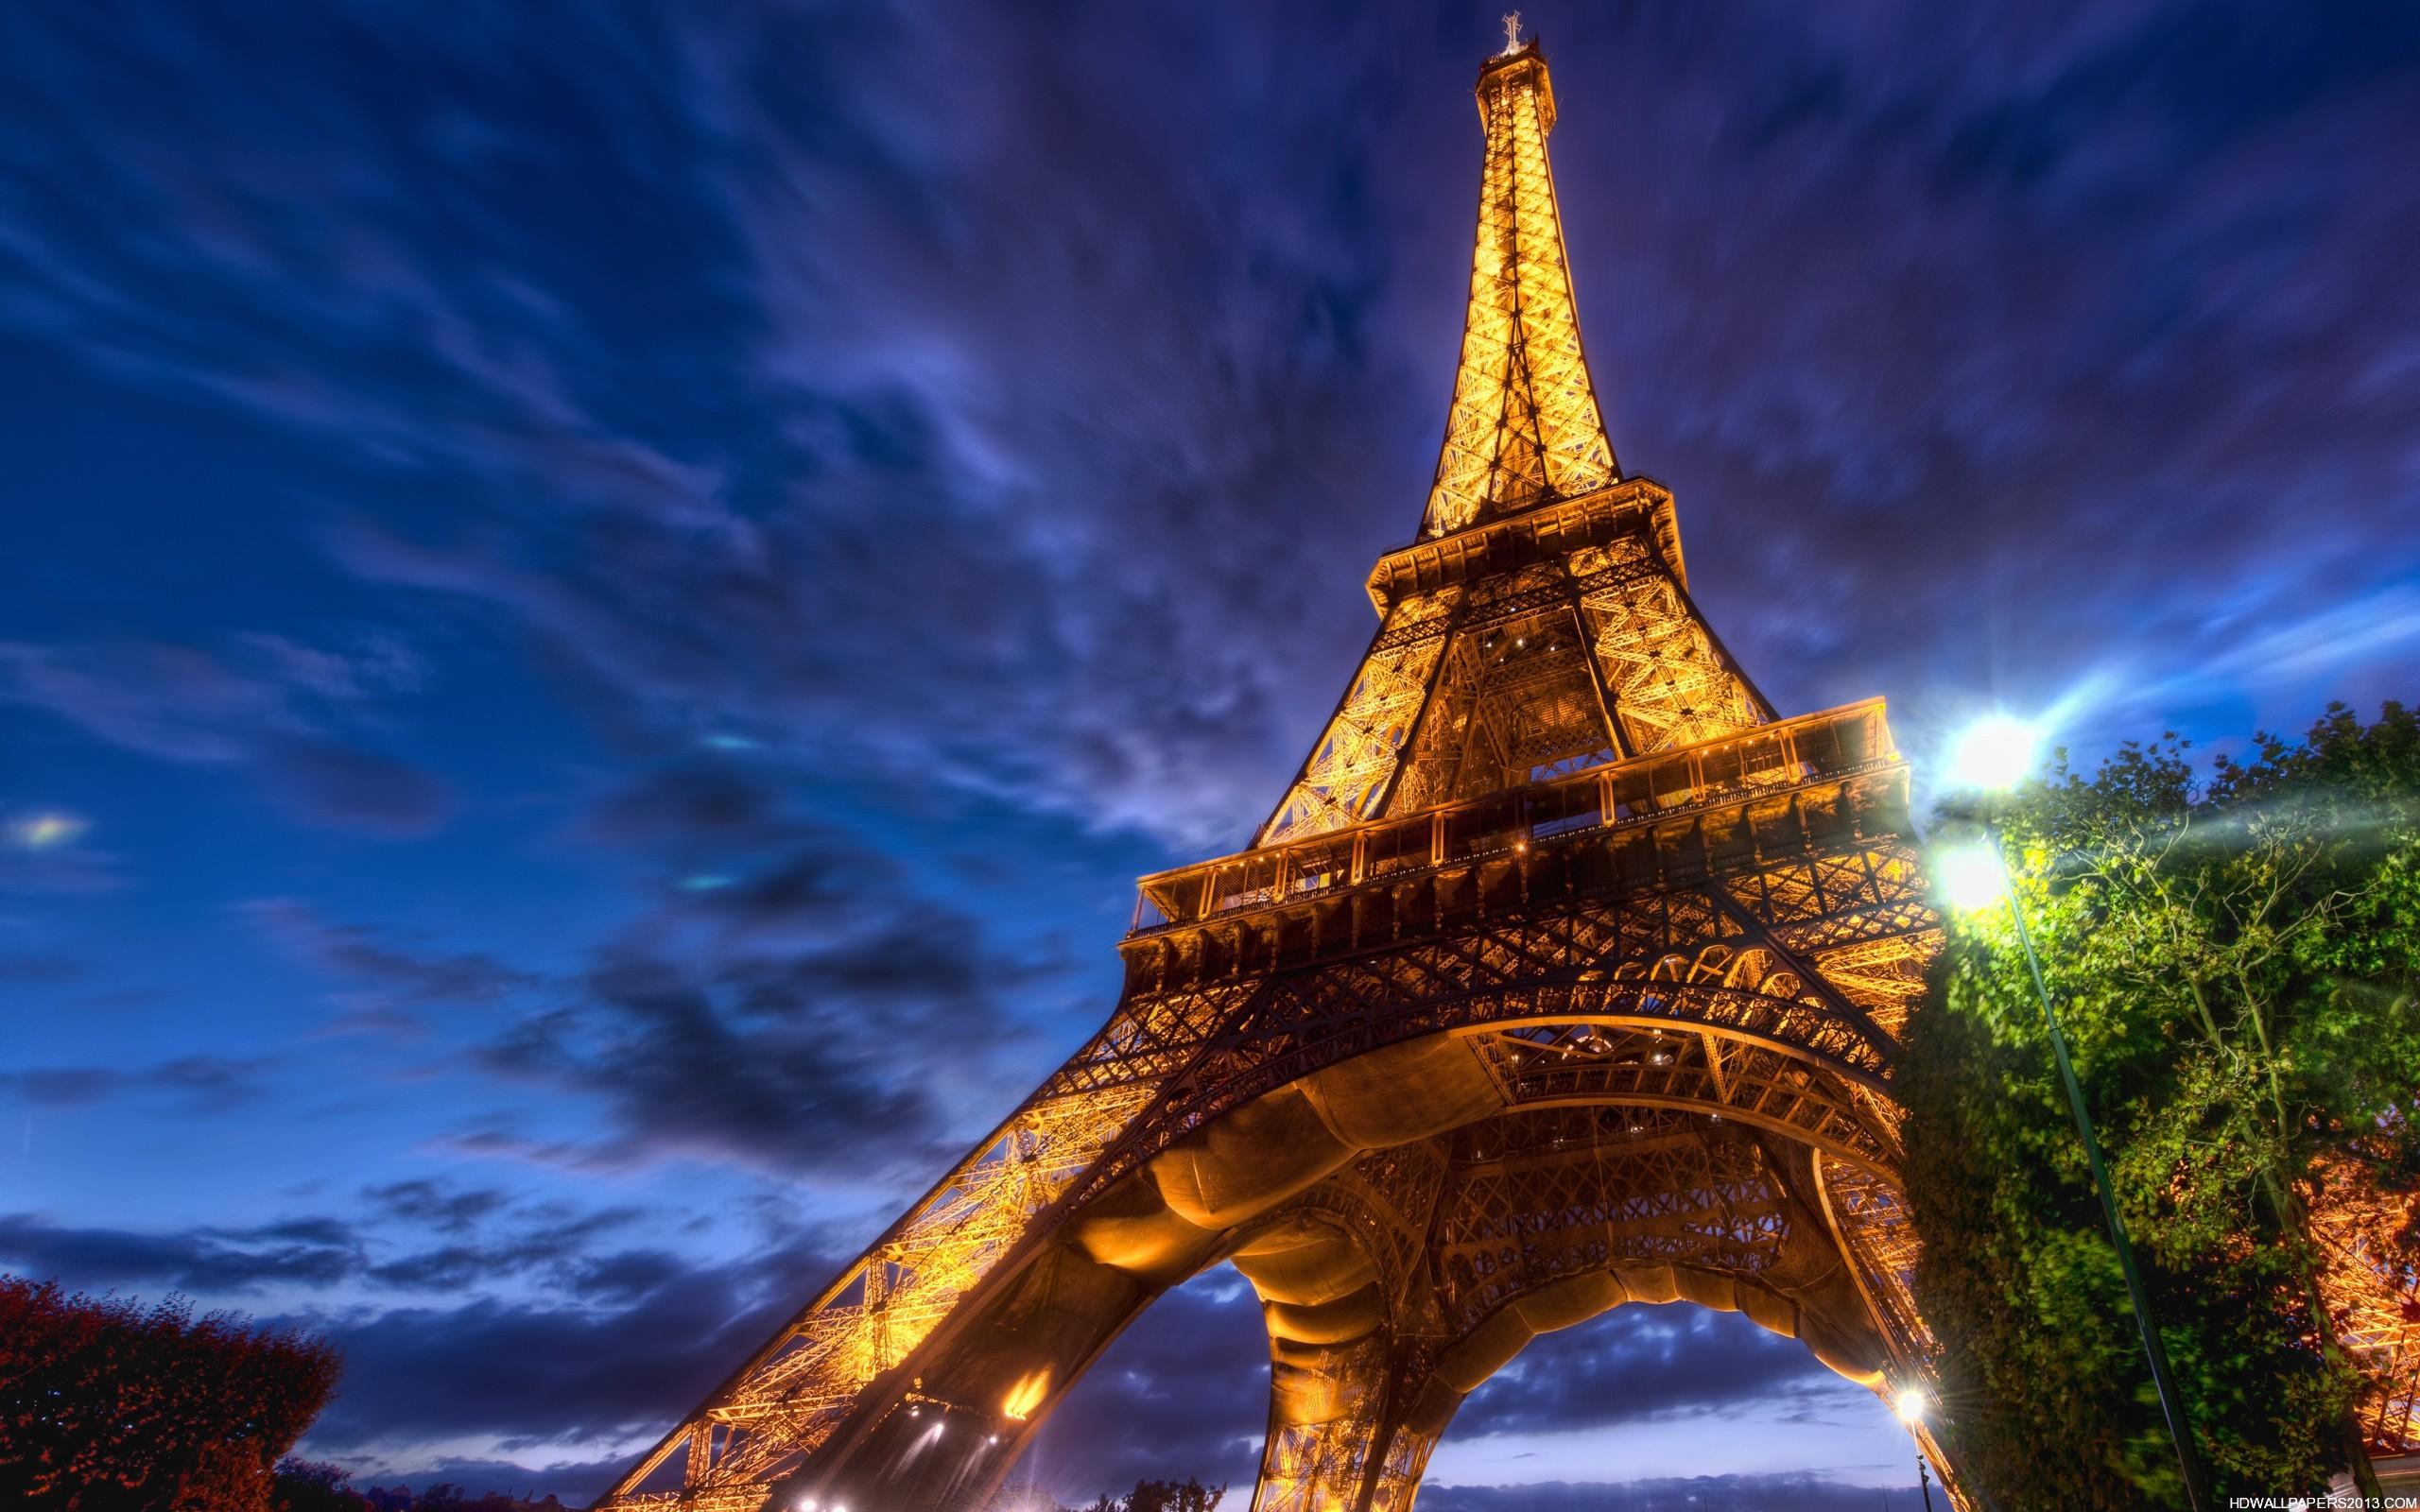 2560 x 1600 · jpeg - Eiffel Tower Wallpaper | High Definition Wallpapers, High Definition ...